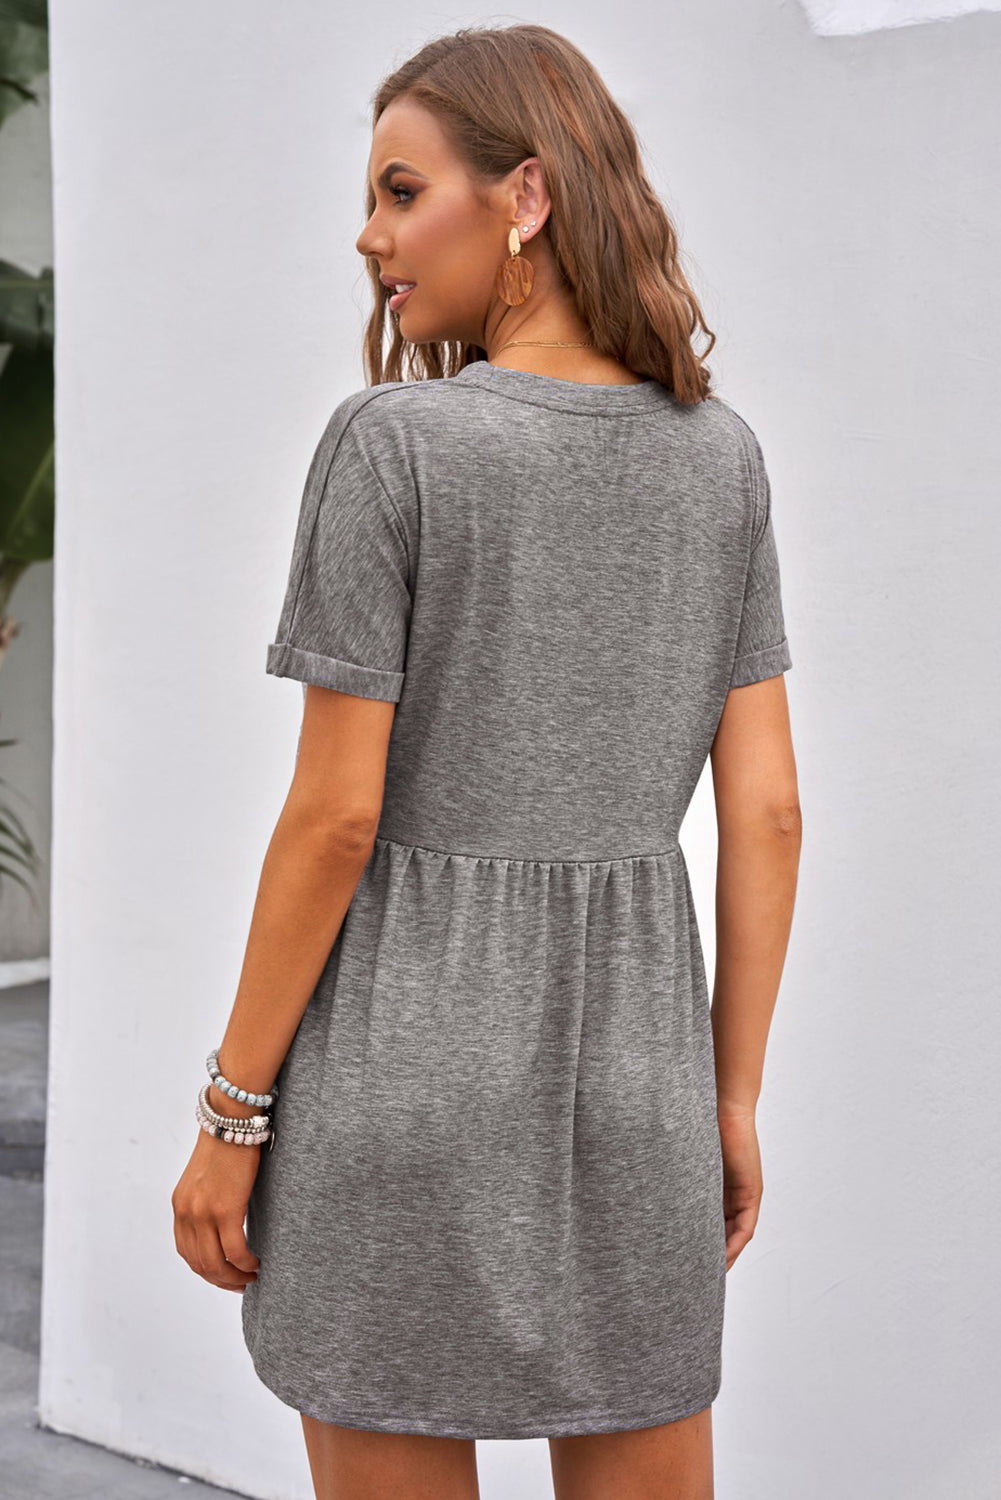 Gray Cotton Blend Empire Waist Short Sleeve T-shirt Mini Dress